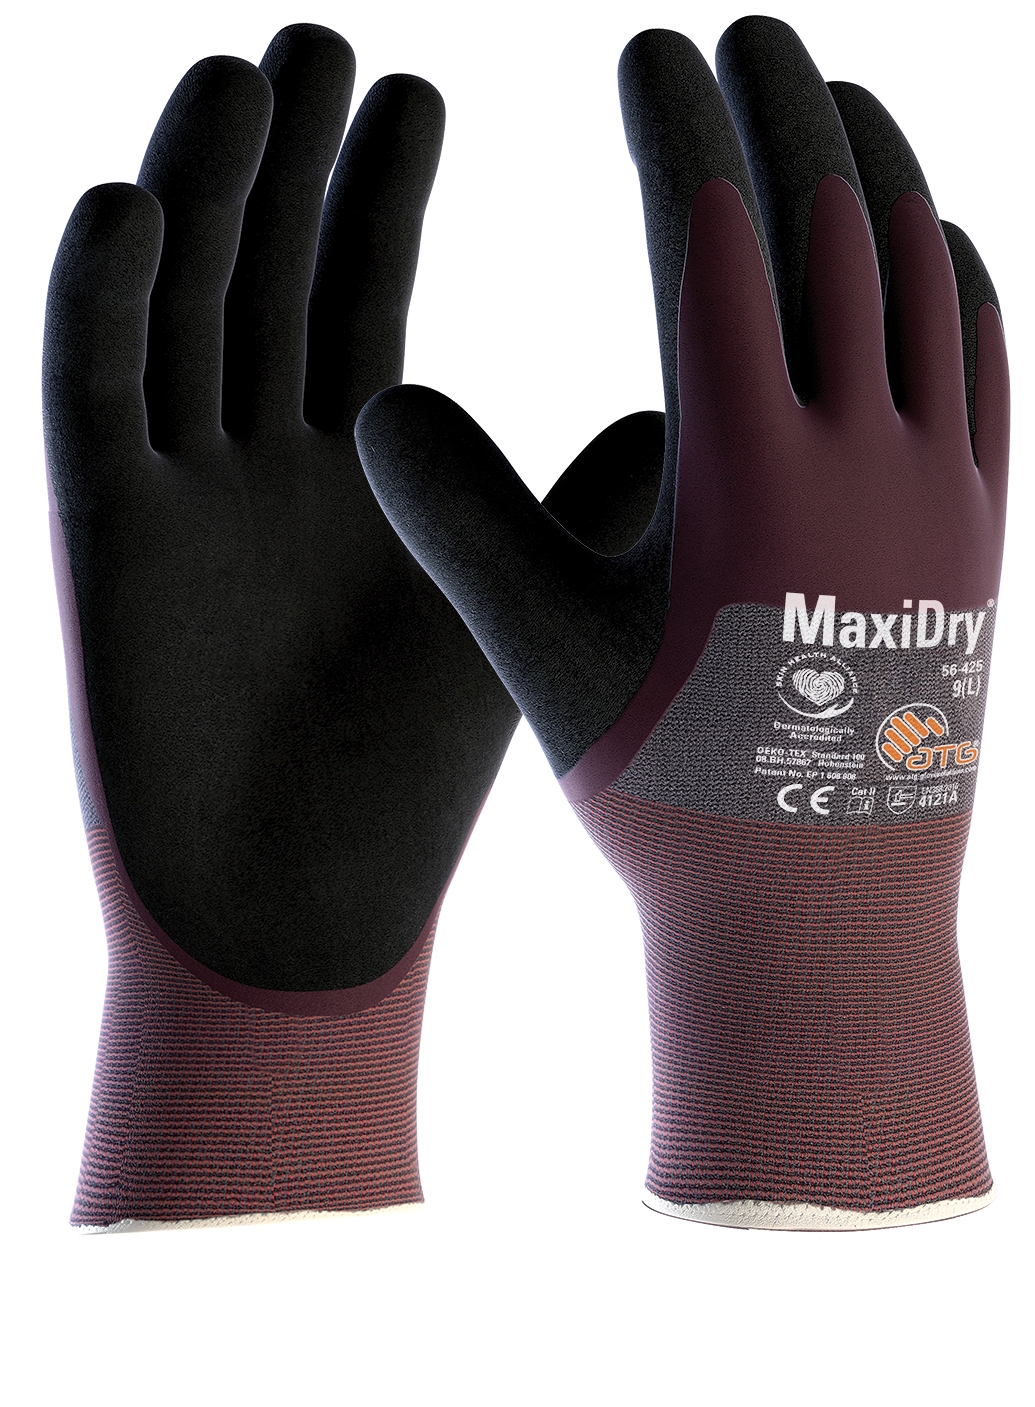 ATG® MaxiDry® Nitril-Handschuhe 3/4 beschichtet